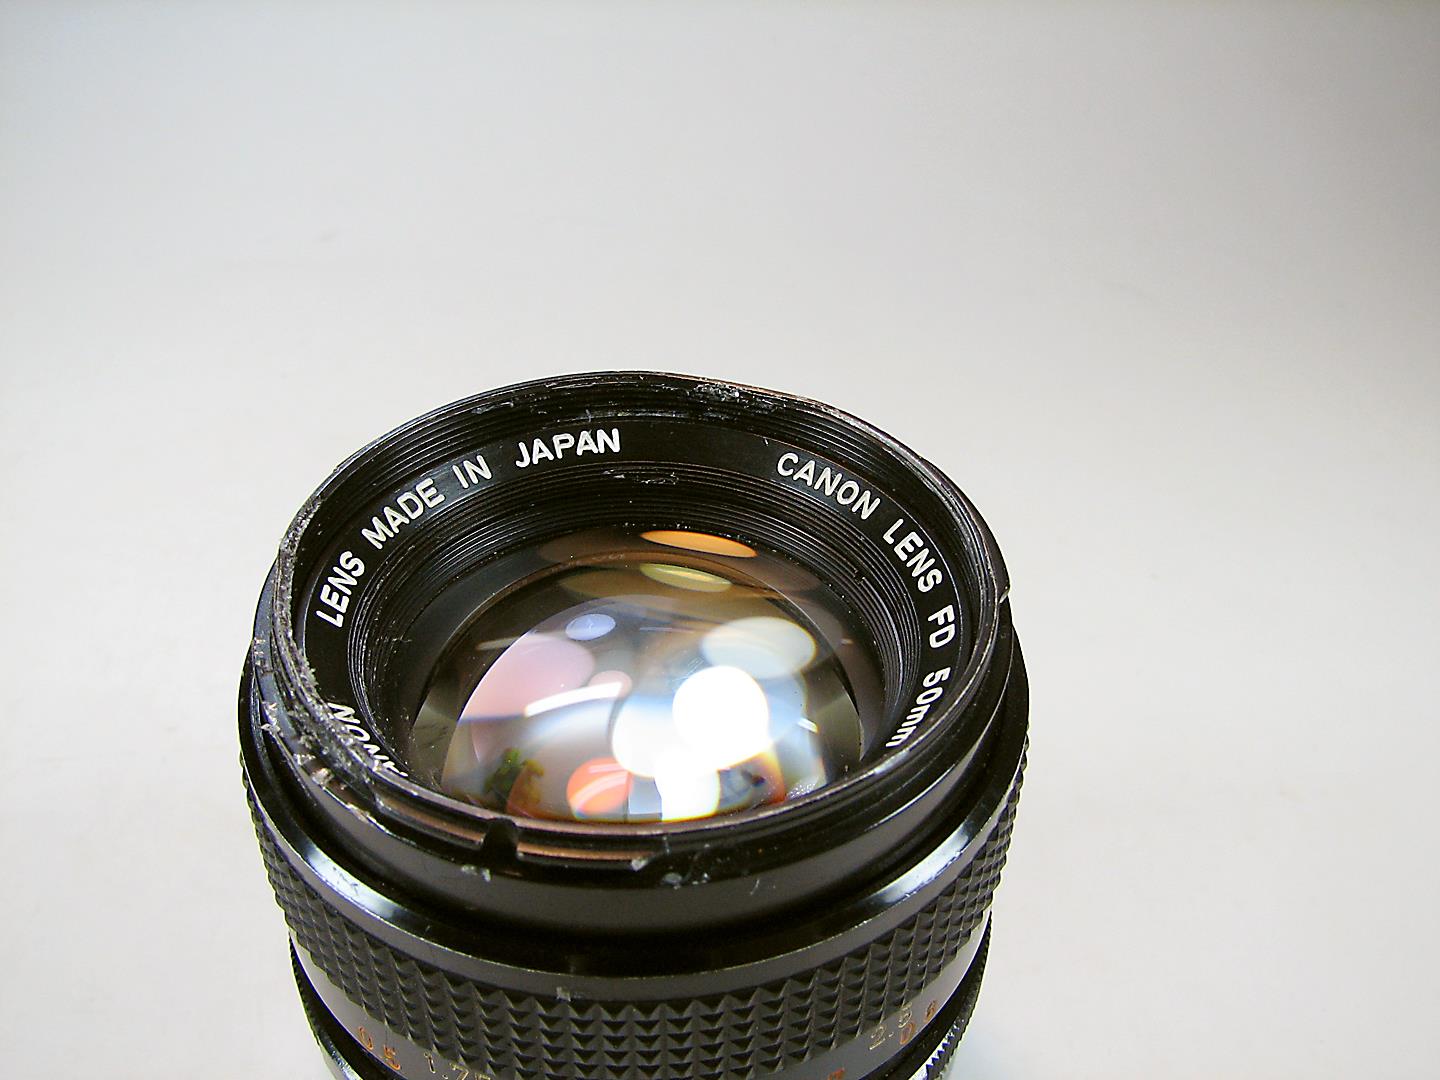 دوربین کانن Canon FTb همراه با لنز 50mm F 1.4 S.S.C